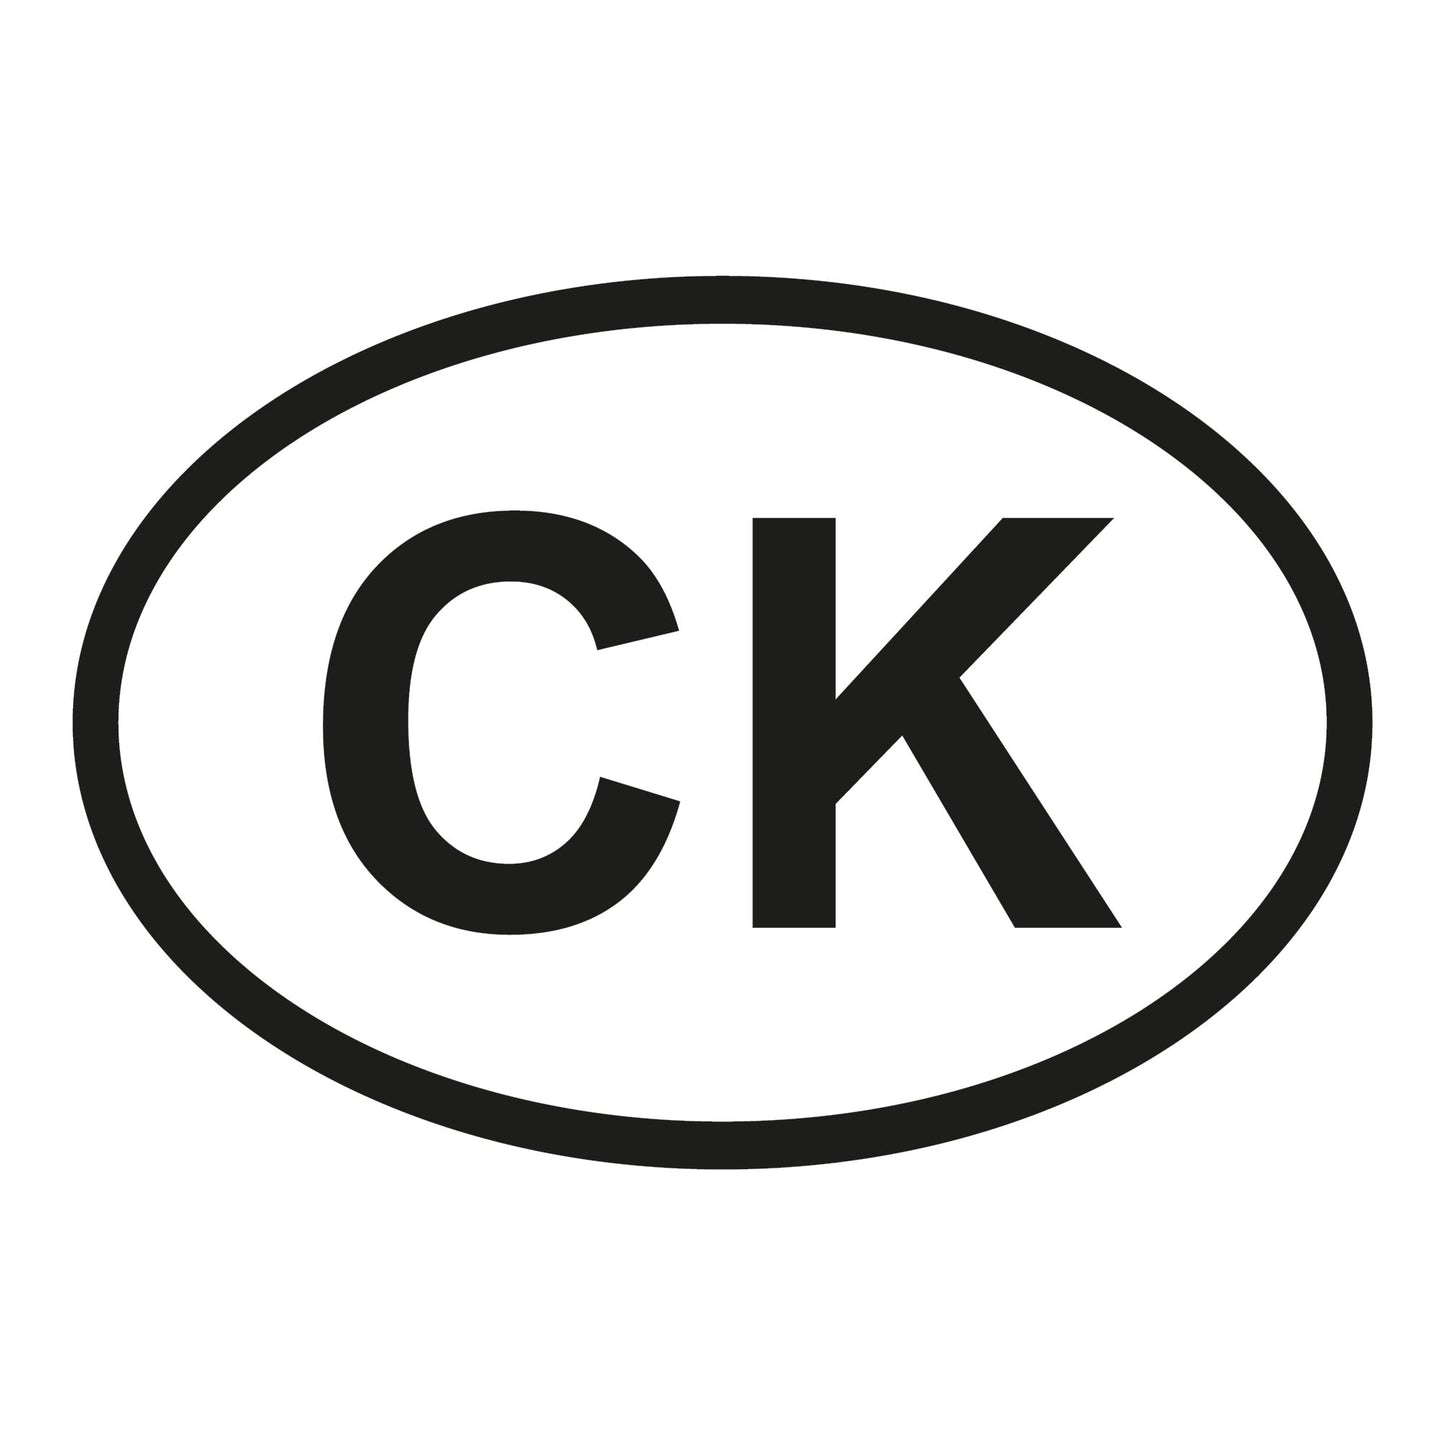 Autoaufkleber - Cookinseln CK - 160x110mm